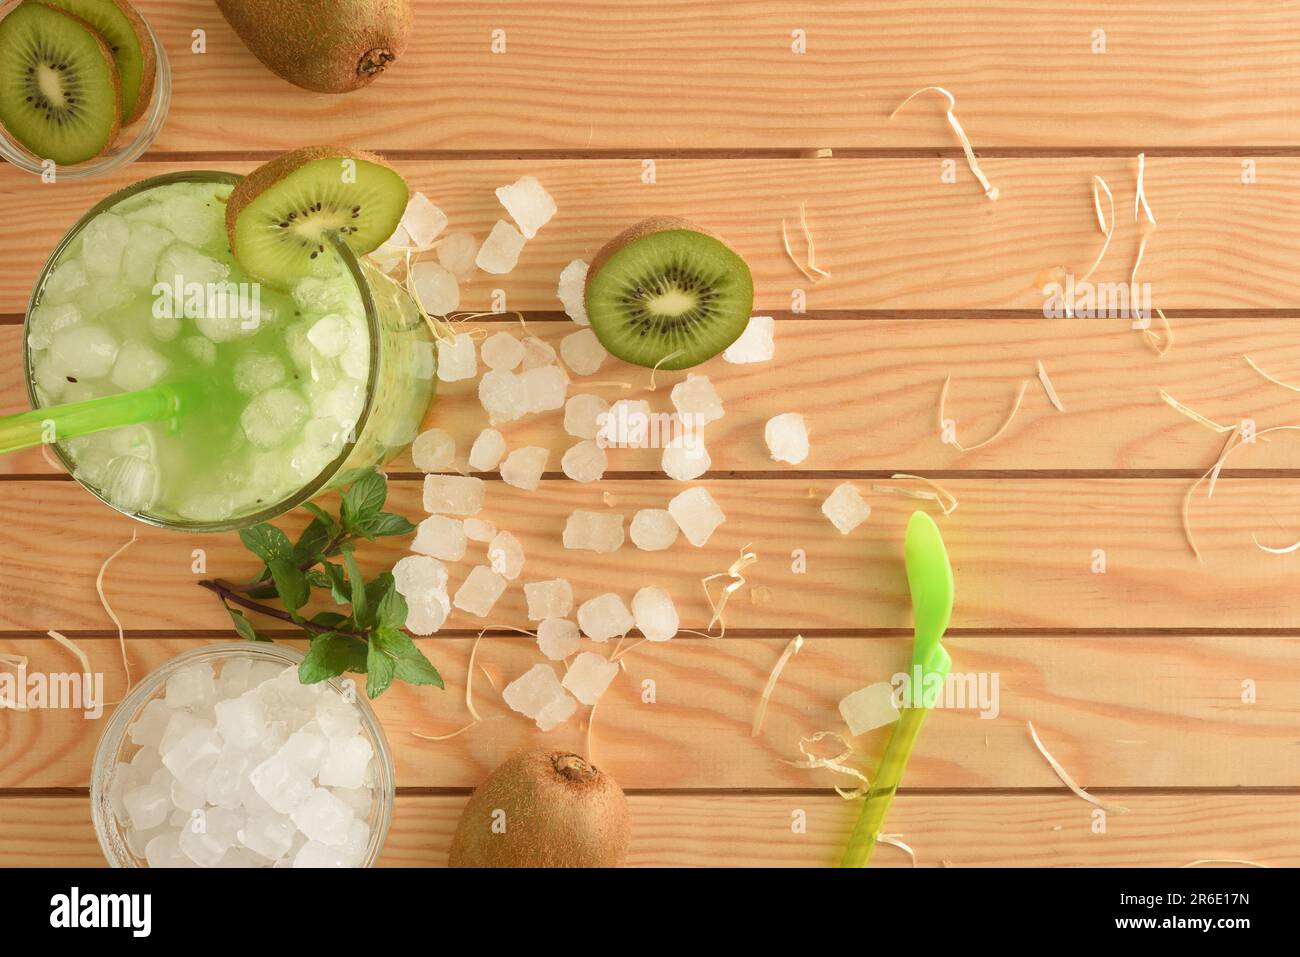 Détail d'un verre avec jus de kiwi et glace sur une table en bois avec des fruits et de la glace pilée autour. Vue de dessus. Composition horizontale. Banque D'Images